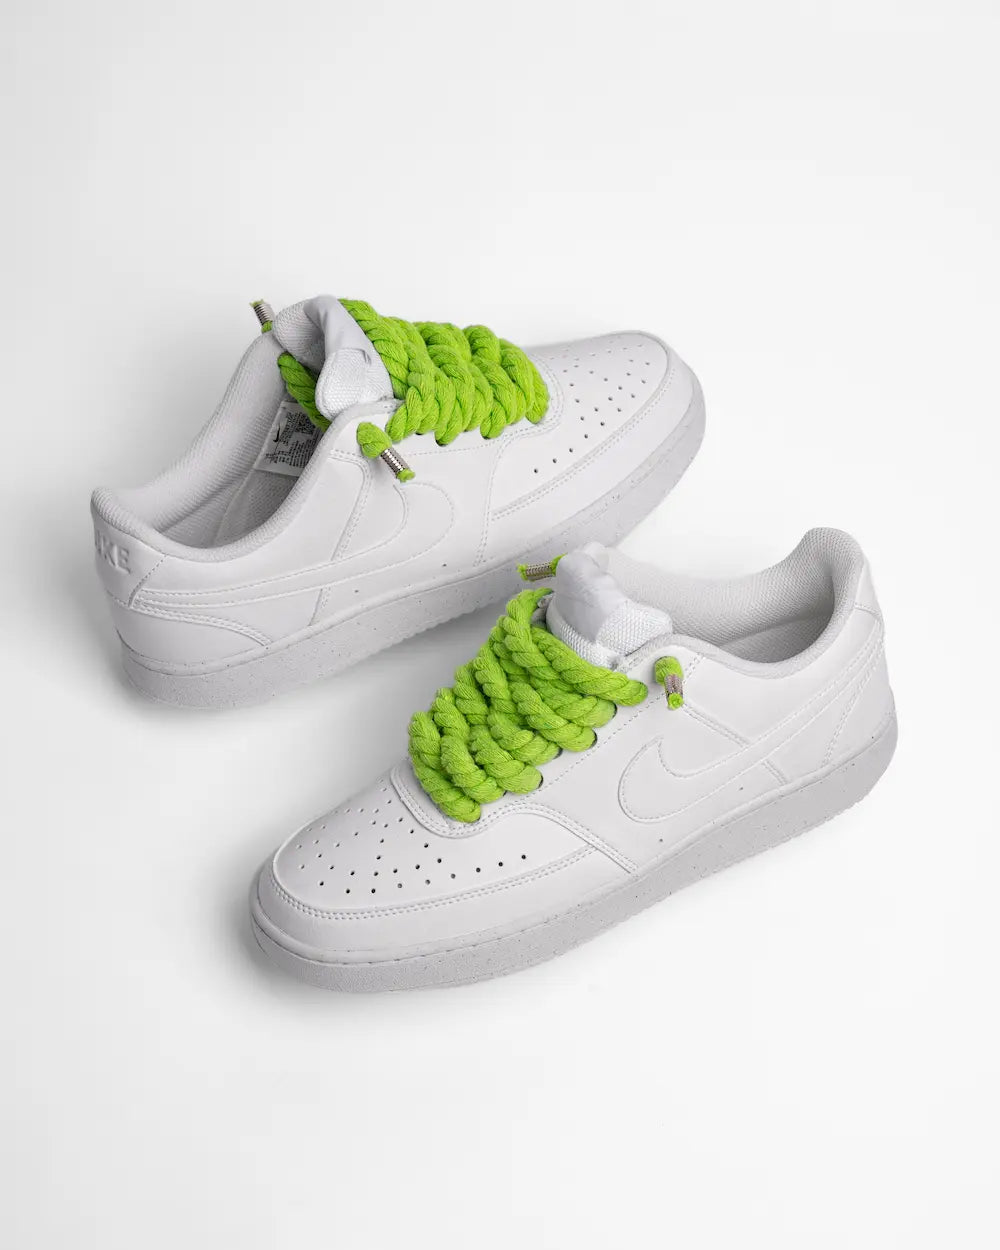 Nike Court Vision personalizzata con lacci in corda verde lime